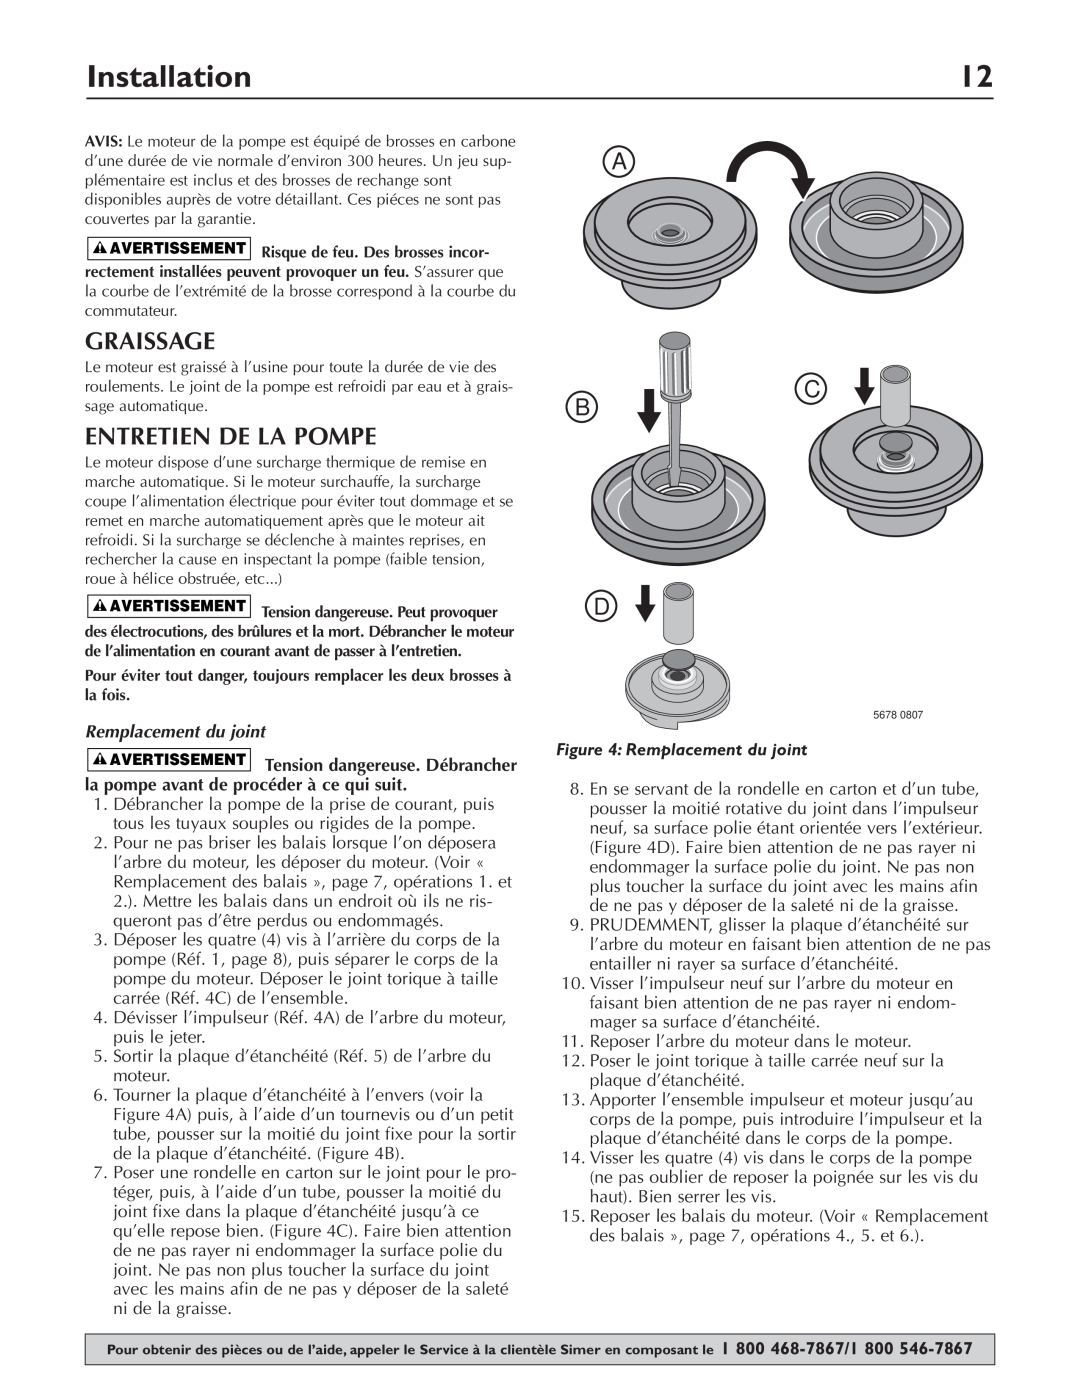 Simer Pumps 4850C owner manual Graissage, Entretien De La Pompe, Installation, A C B D 